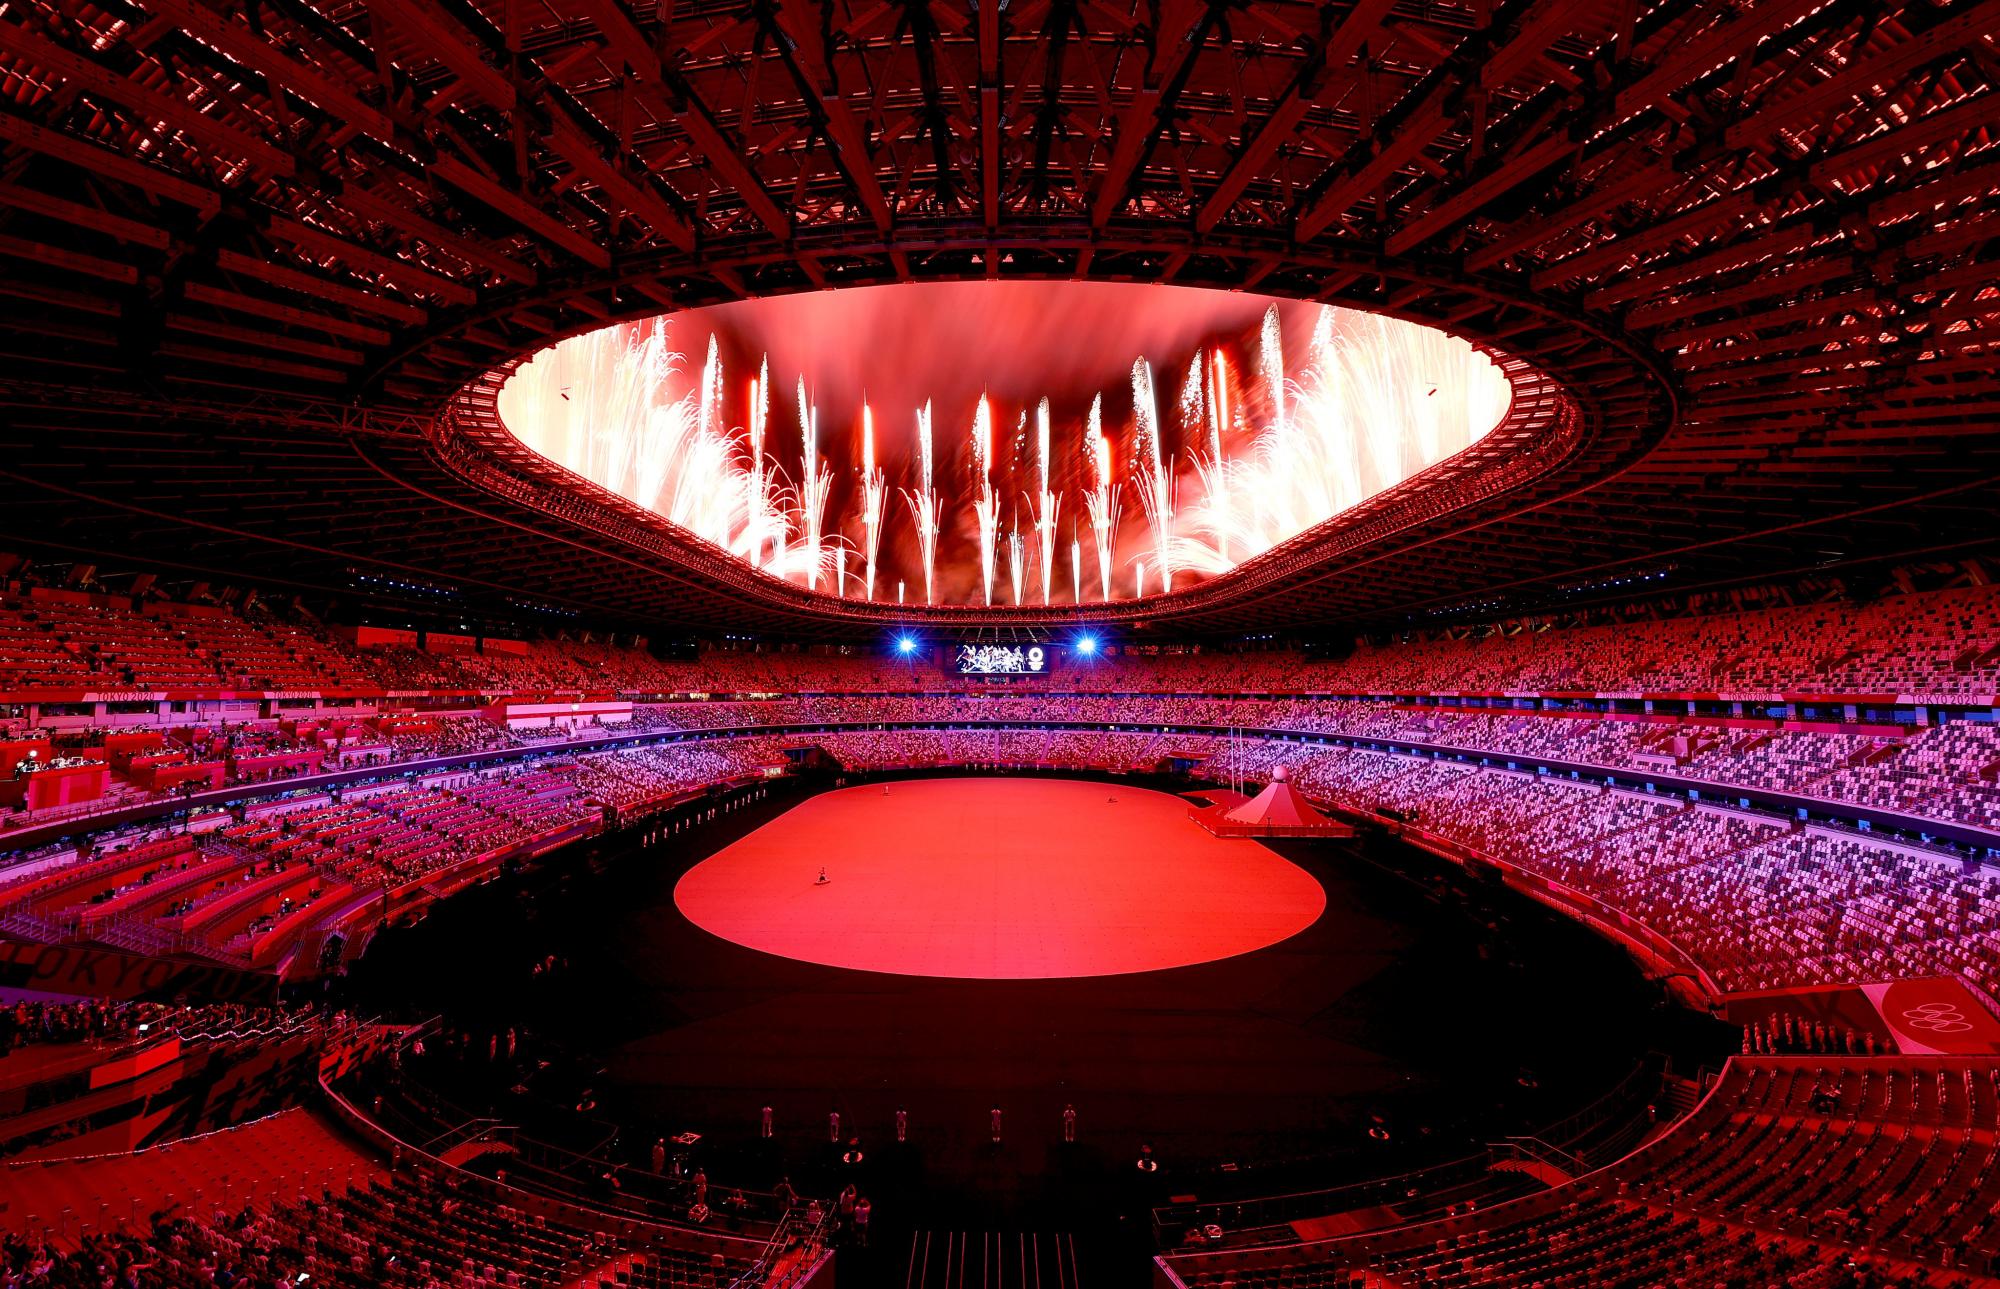 $!Tradición y tecnología enmarcan la inauguración de los Juegos Olímpicos de Tokio 2020